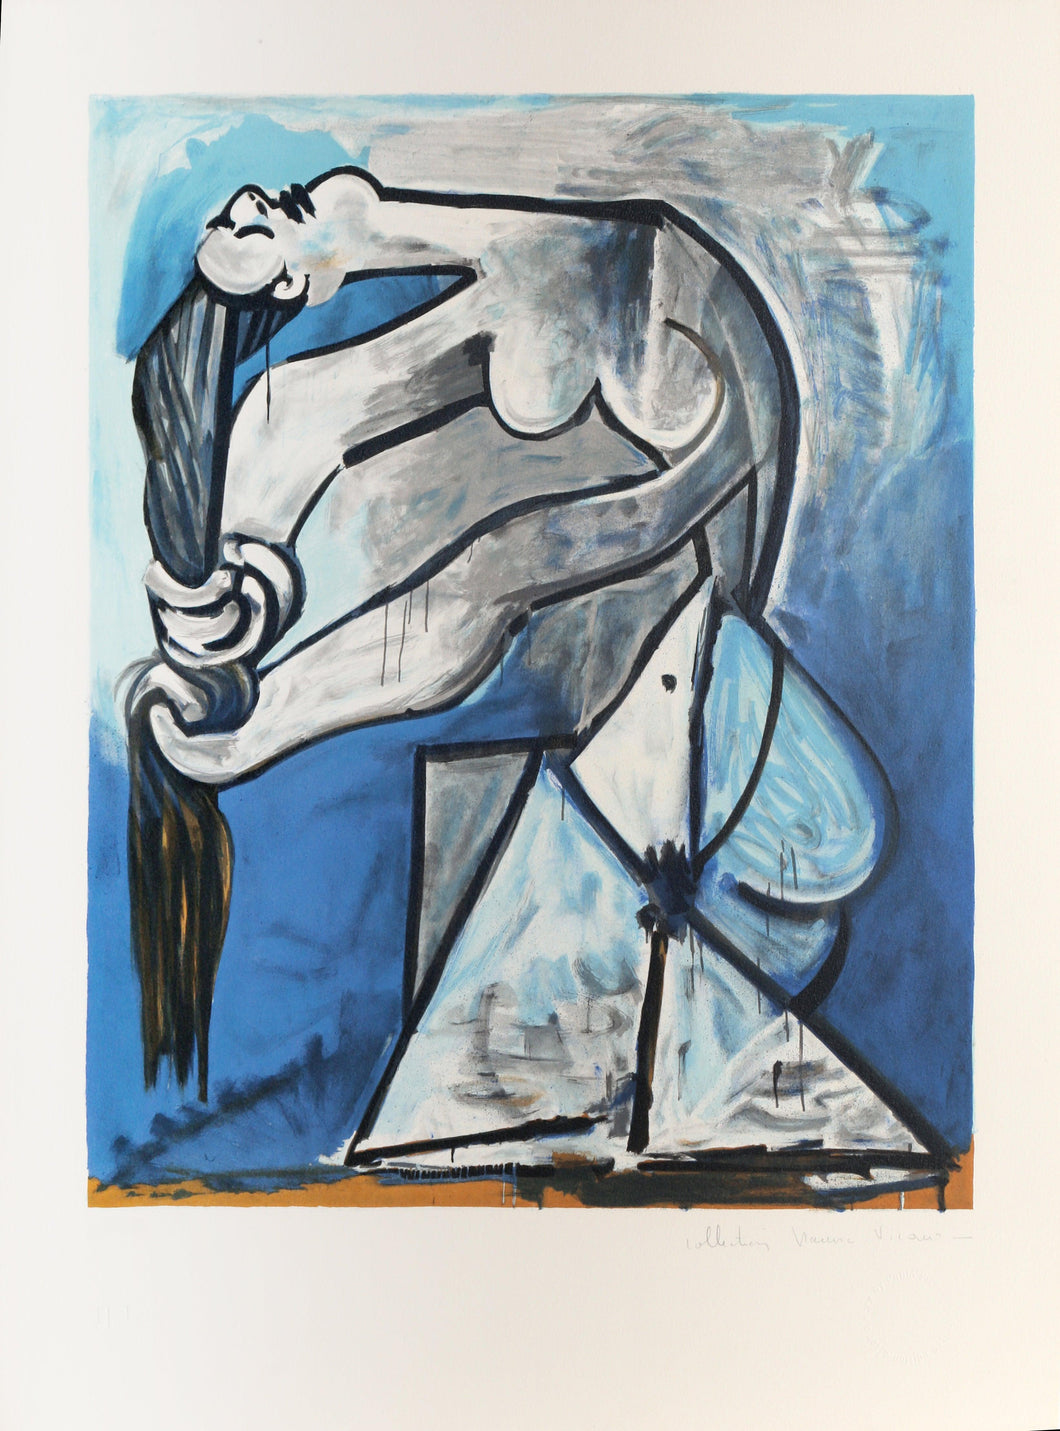 Ne Se Tordant les Chevaux Lithograph | Pablo Picasso,{{product.type}}